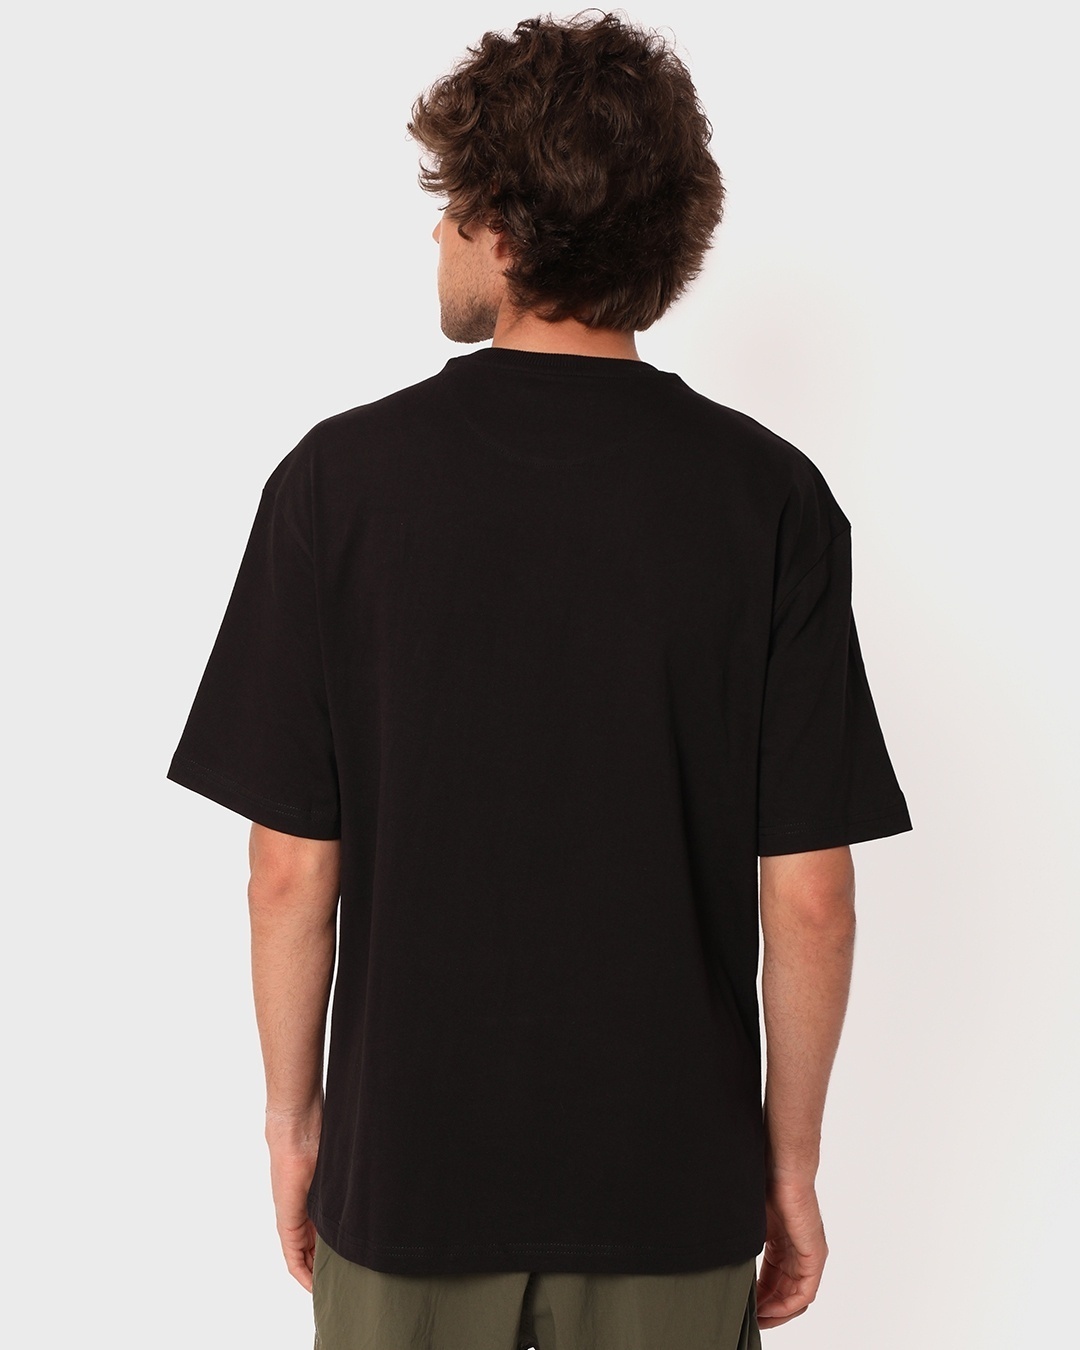 Buy Men's Black Oversized T-shirt for Men black Online at Bewakoof